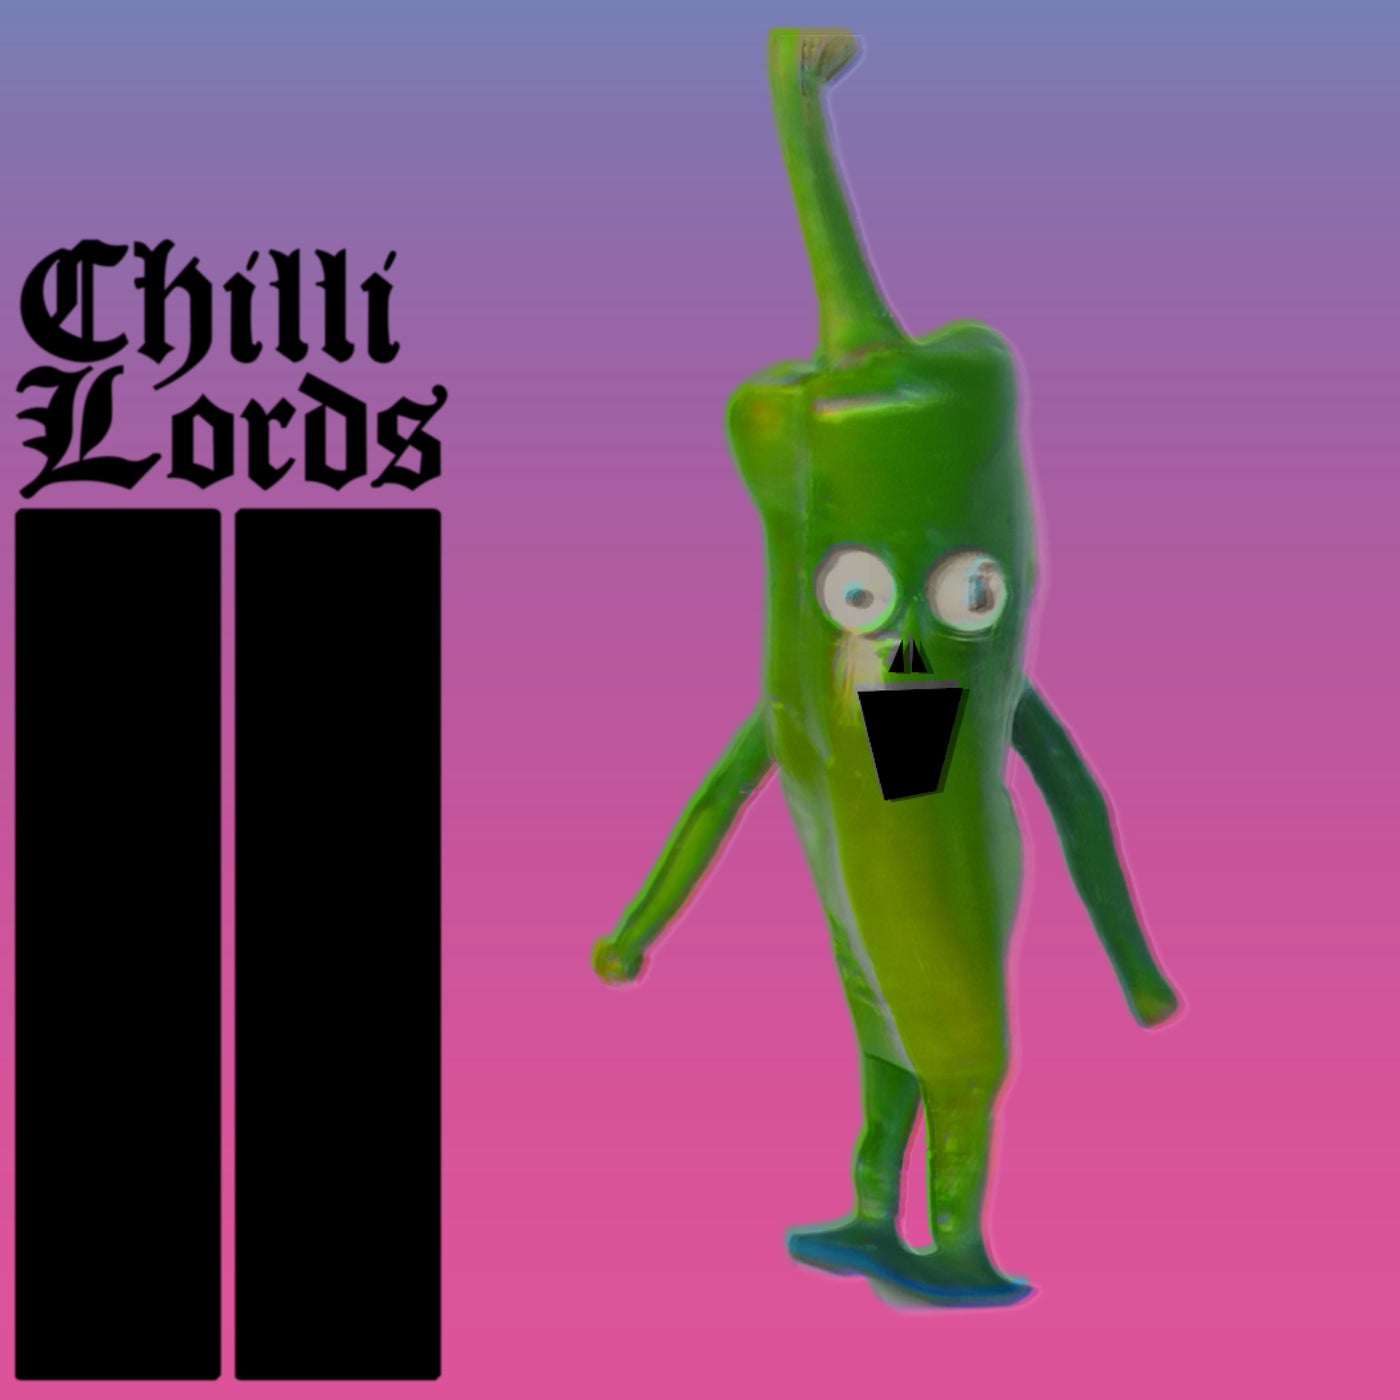 Chilli Lords II